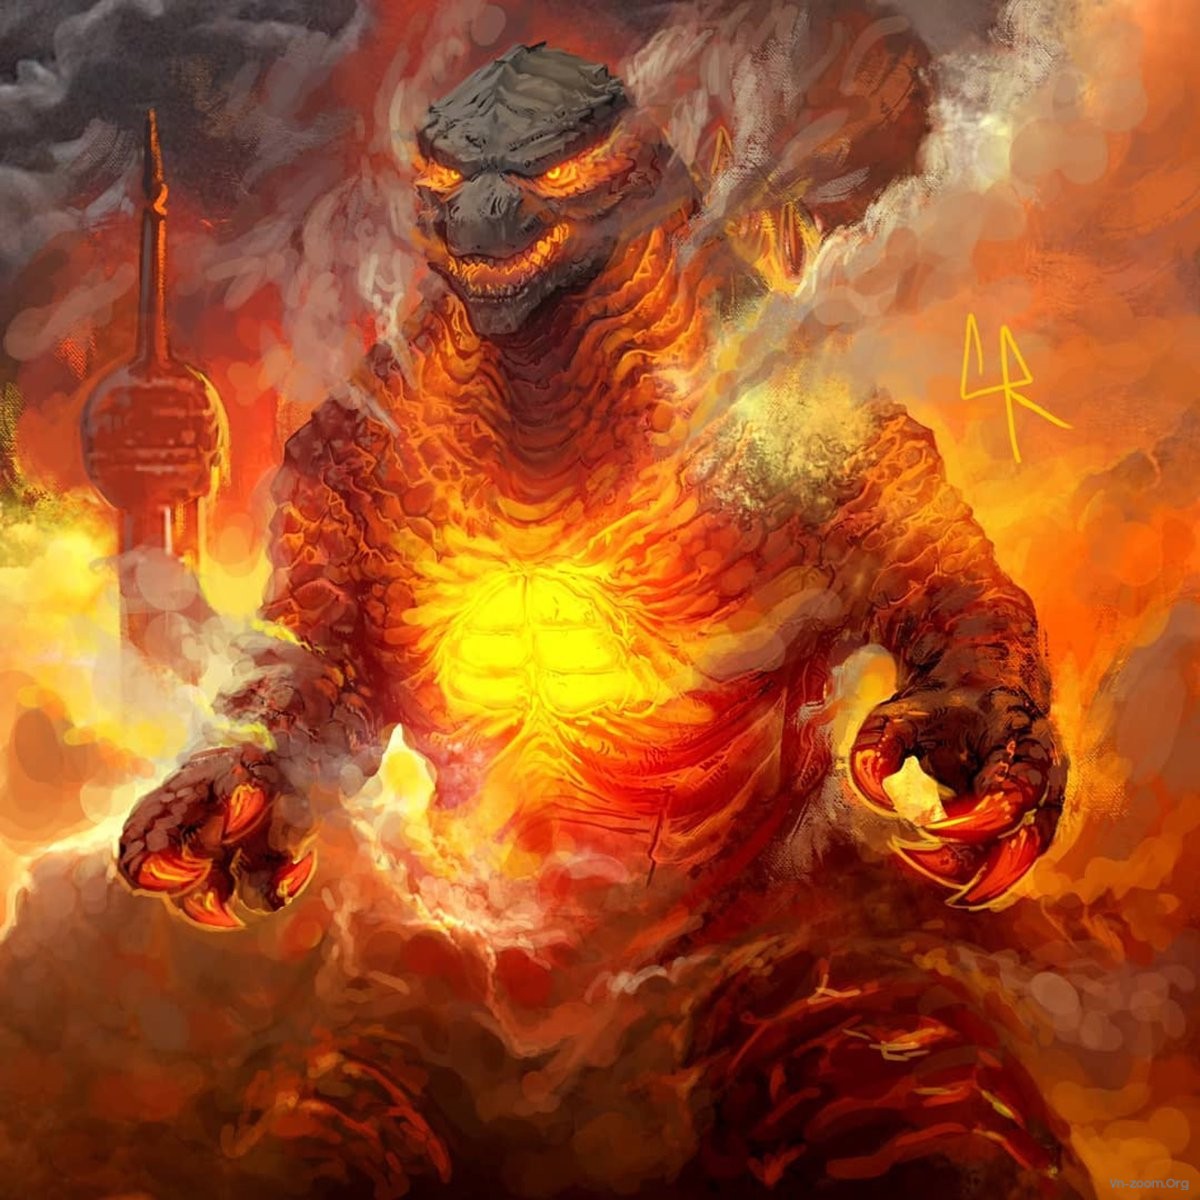 Chúa Tể Godzilla - linh vật vĩ đại của đại dương, là biểu tượng của sức mạnh và sự bất khả xâm phạm. Với hình ảnh đầy uy lực và ánh sáng xanh lấp lánh, hãy đến với chúng tôi để khám phá thế giới đầy kỳ vĩ của Chúa Tể Godzilla!